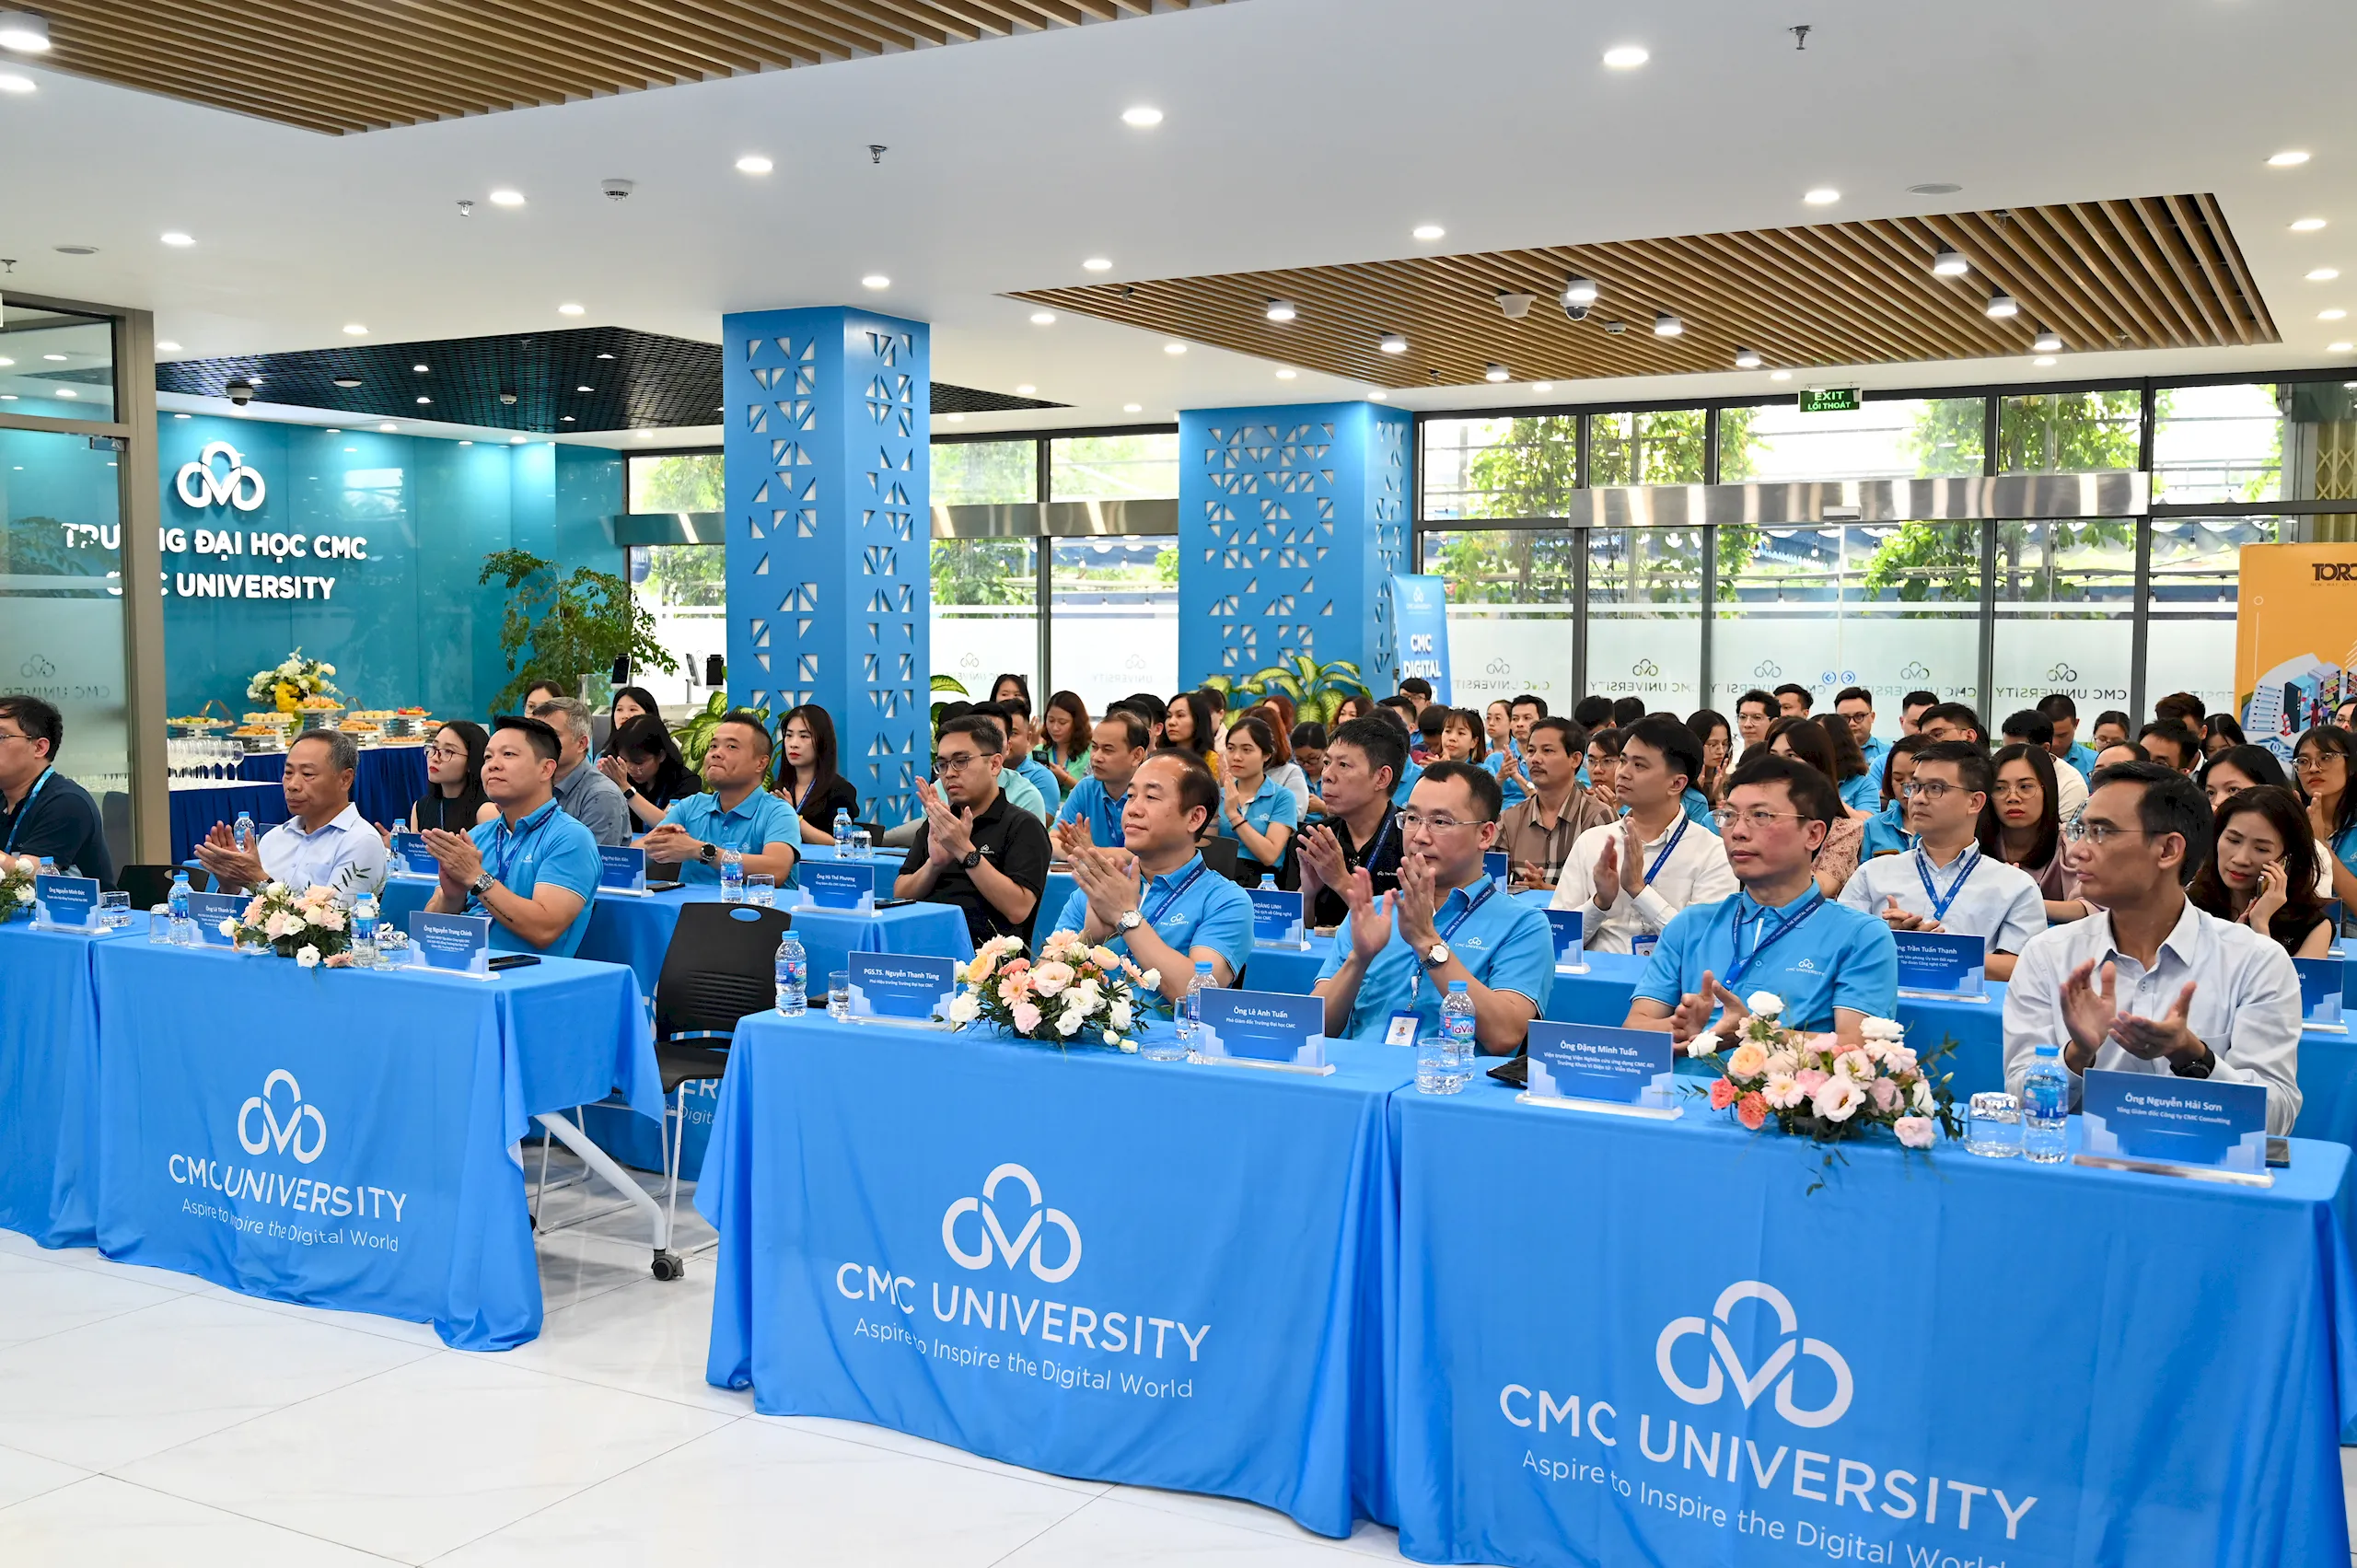 Trường Đại học CMC chính thức ra mắt AI University – Từ “Digital University” tới “AI University”